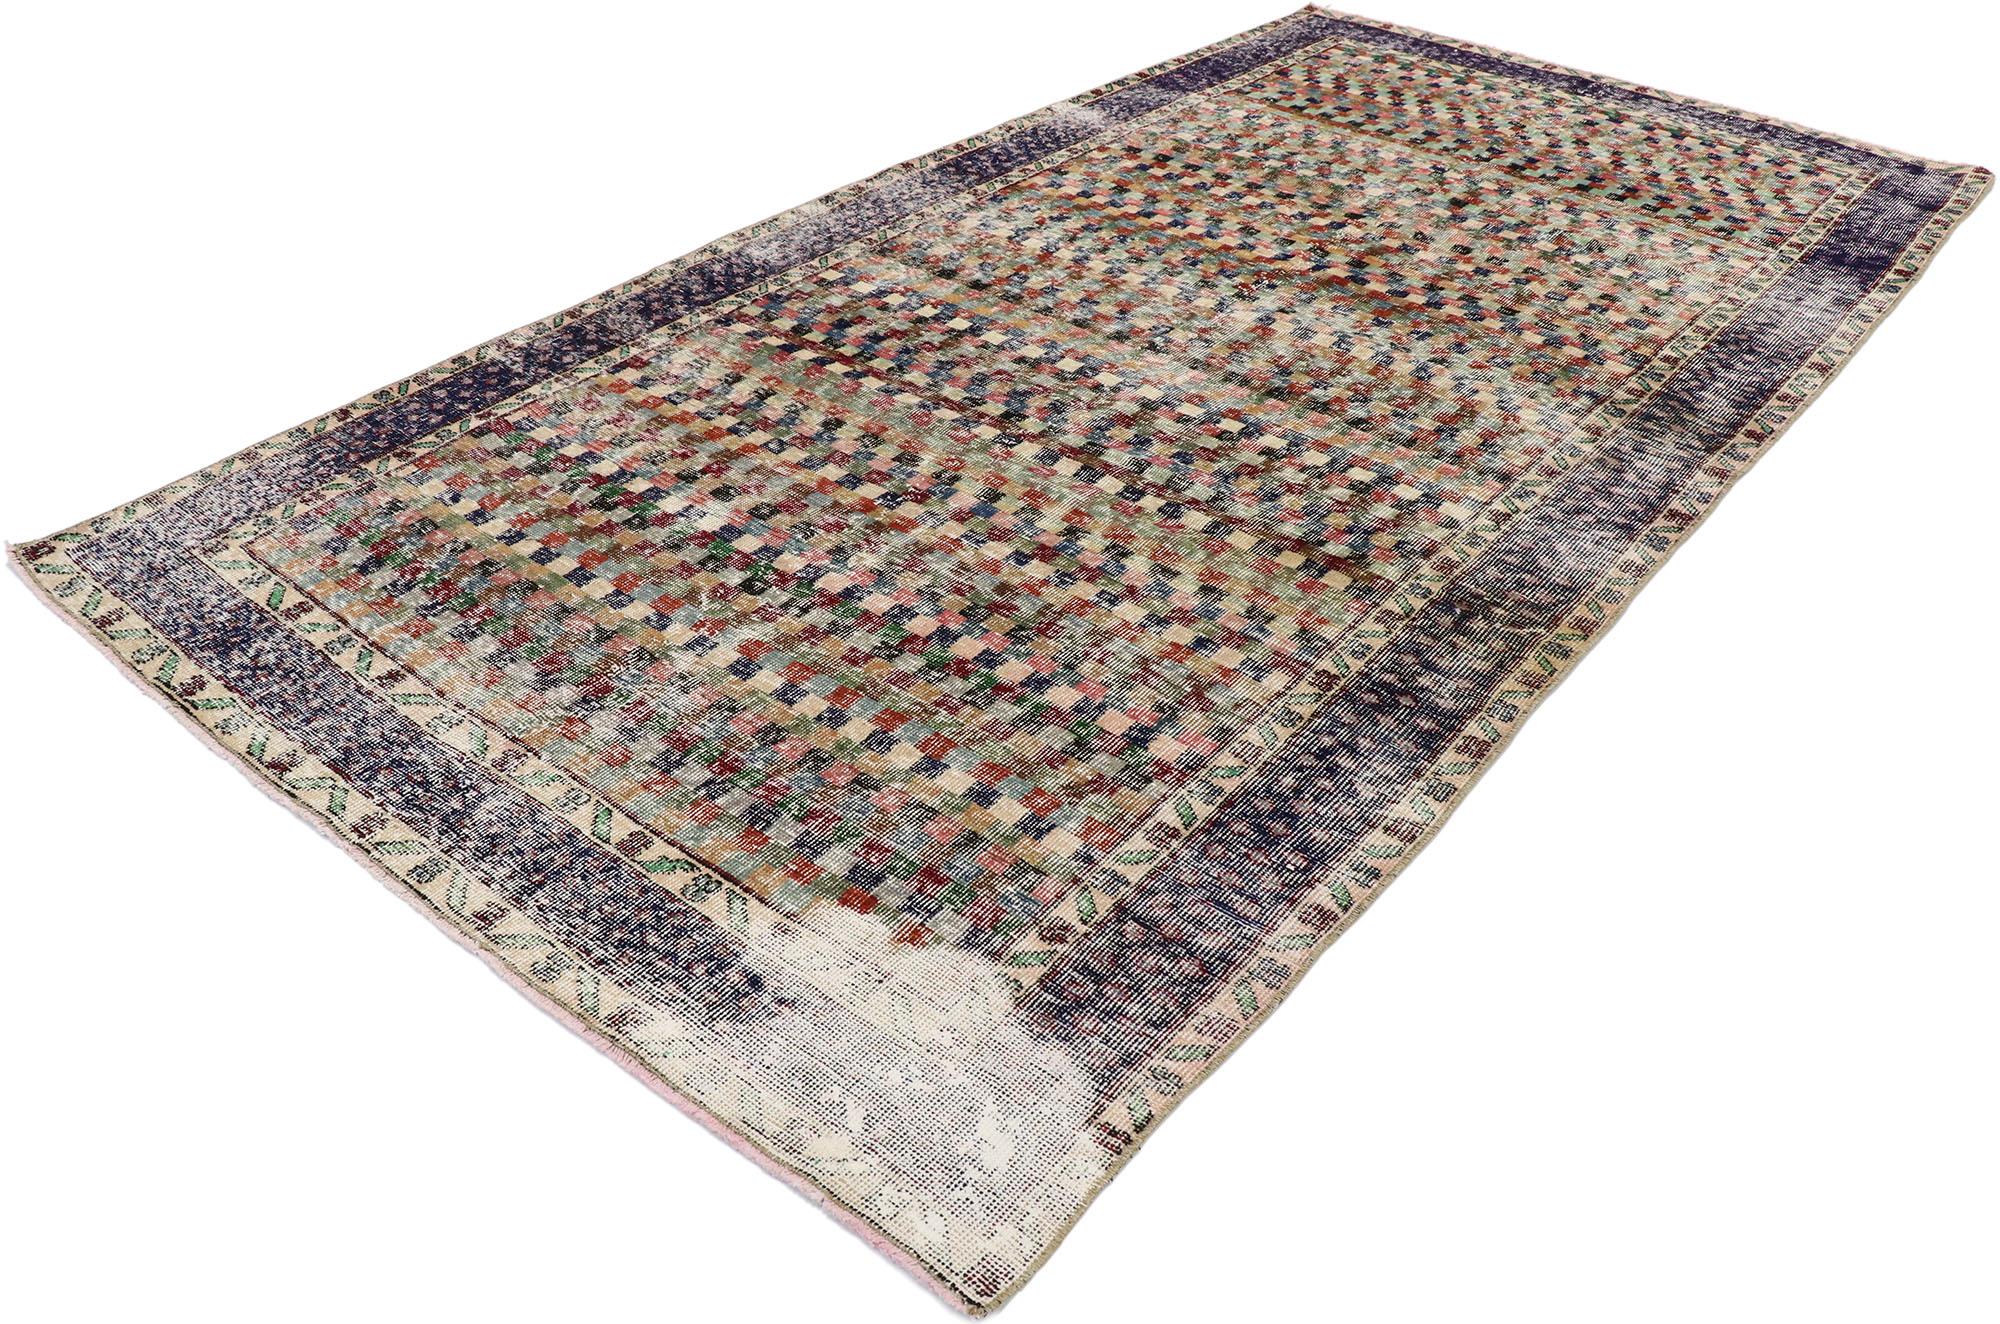 53311 Tapis Sivas turc vintage vieilli de style rustique Arts & Crafts. Ce tapis Sivas turc vintage en laine nouée à la main présente un motif en damier composé de cubes et de carrés multicolores. De légères vagues d'abrasion et des variations